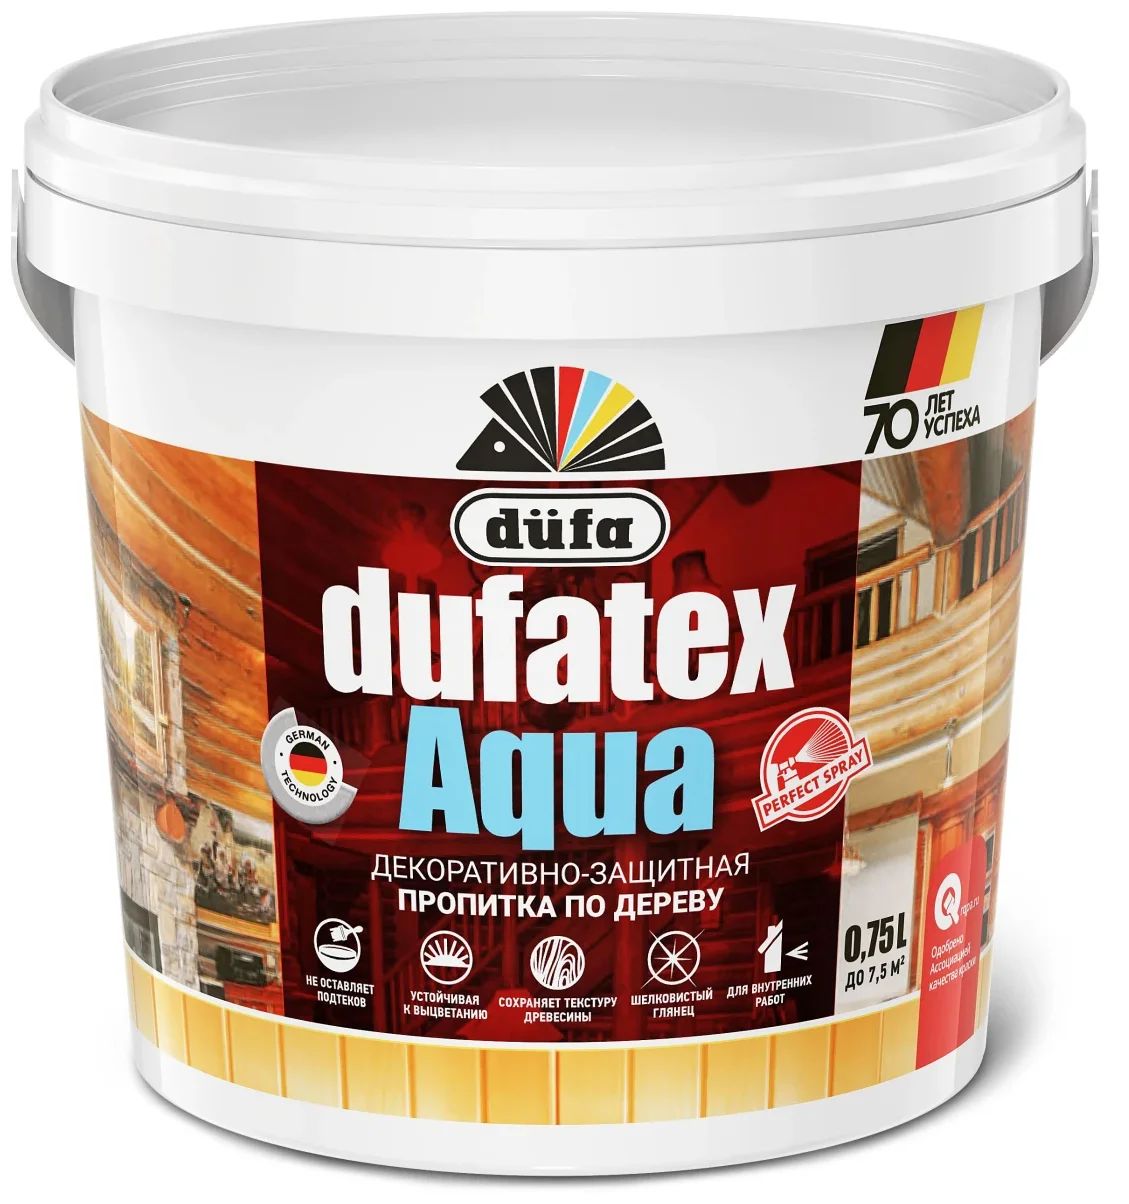 Пропитка для древесины Dufa Dufatex-Aqua бесцветная, 750 мл антисептическая пропитка по бетону ареал антигрибок антиплесень 10л а 417